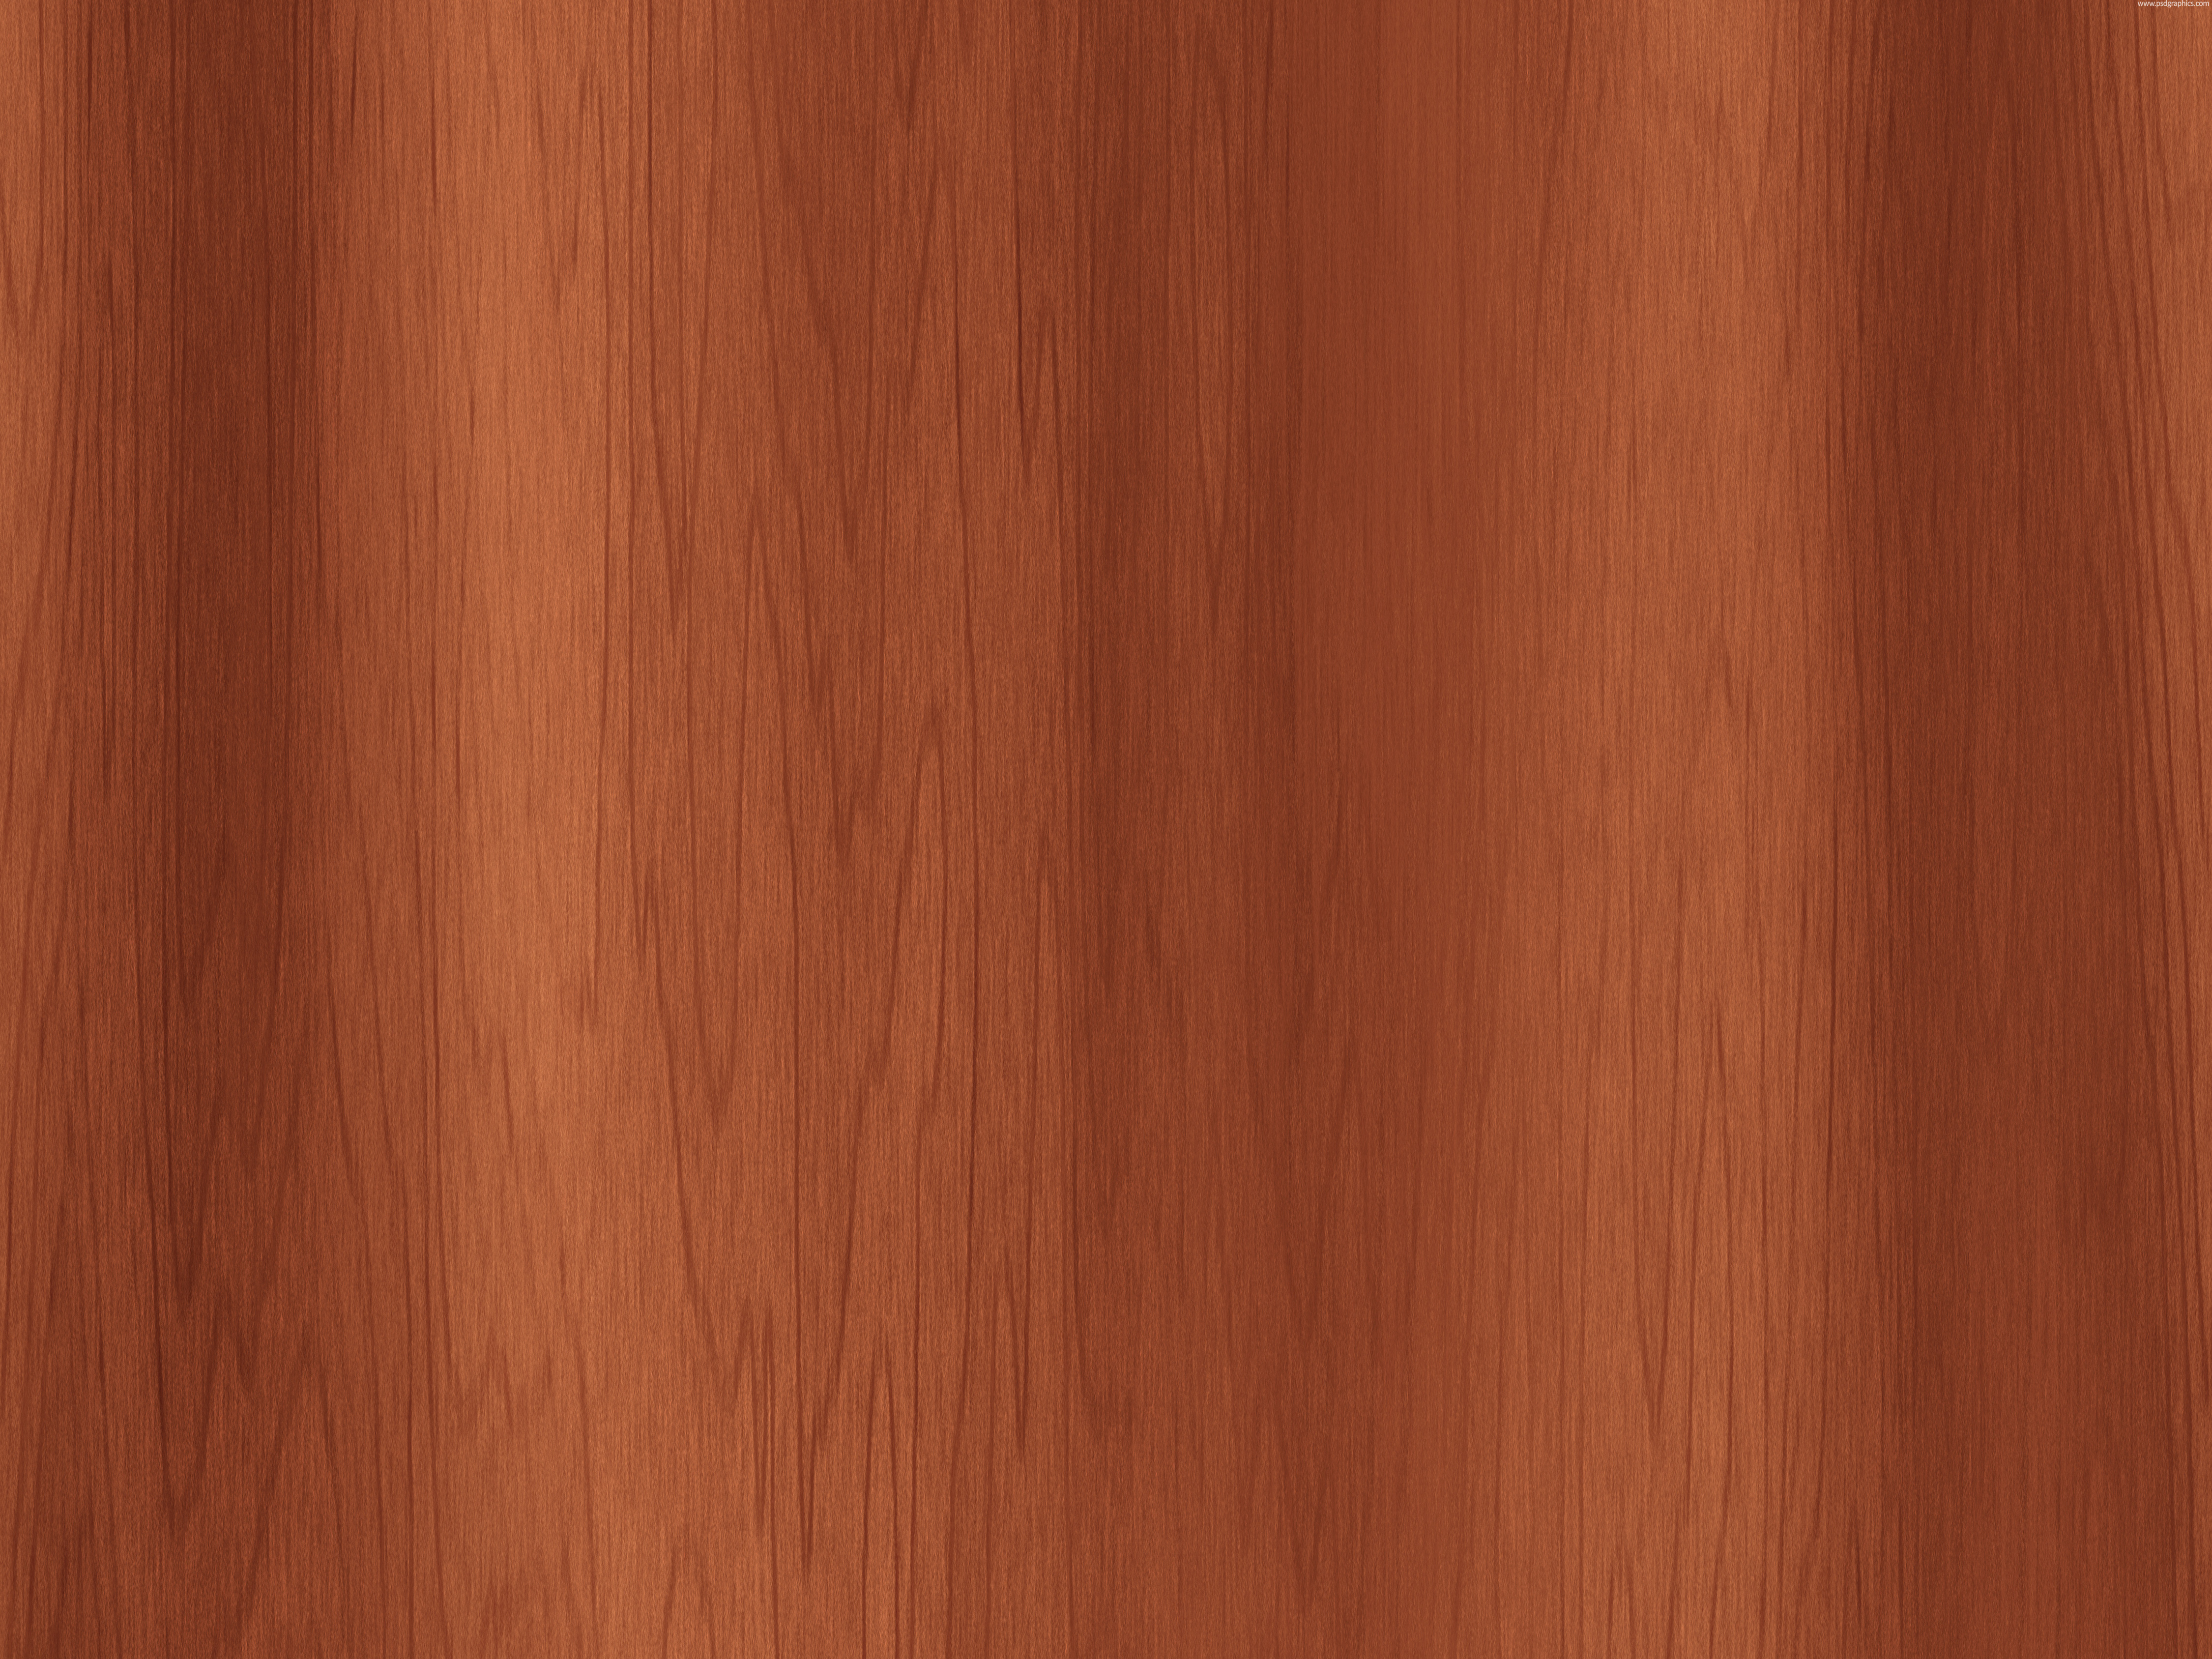 Cherry Wood Texture Wooden Panels Floor Light